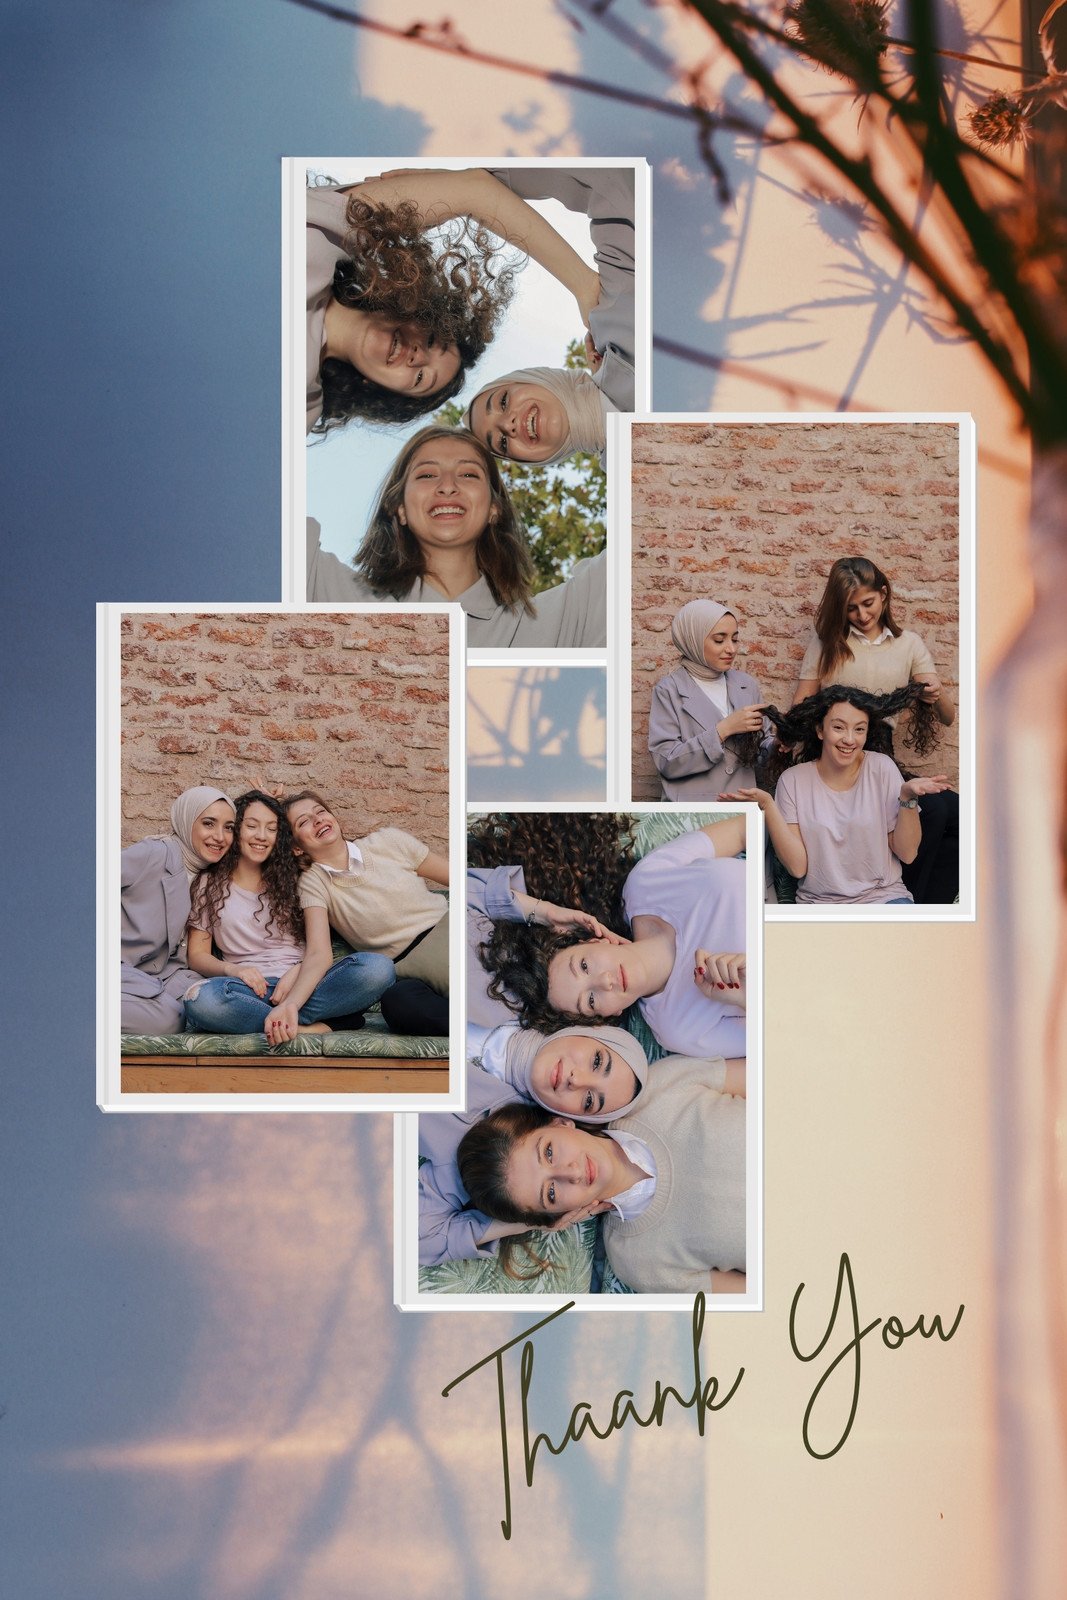 Een evenement maart voordat Free and customizable love photo collage templates | Canva